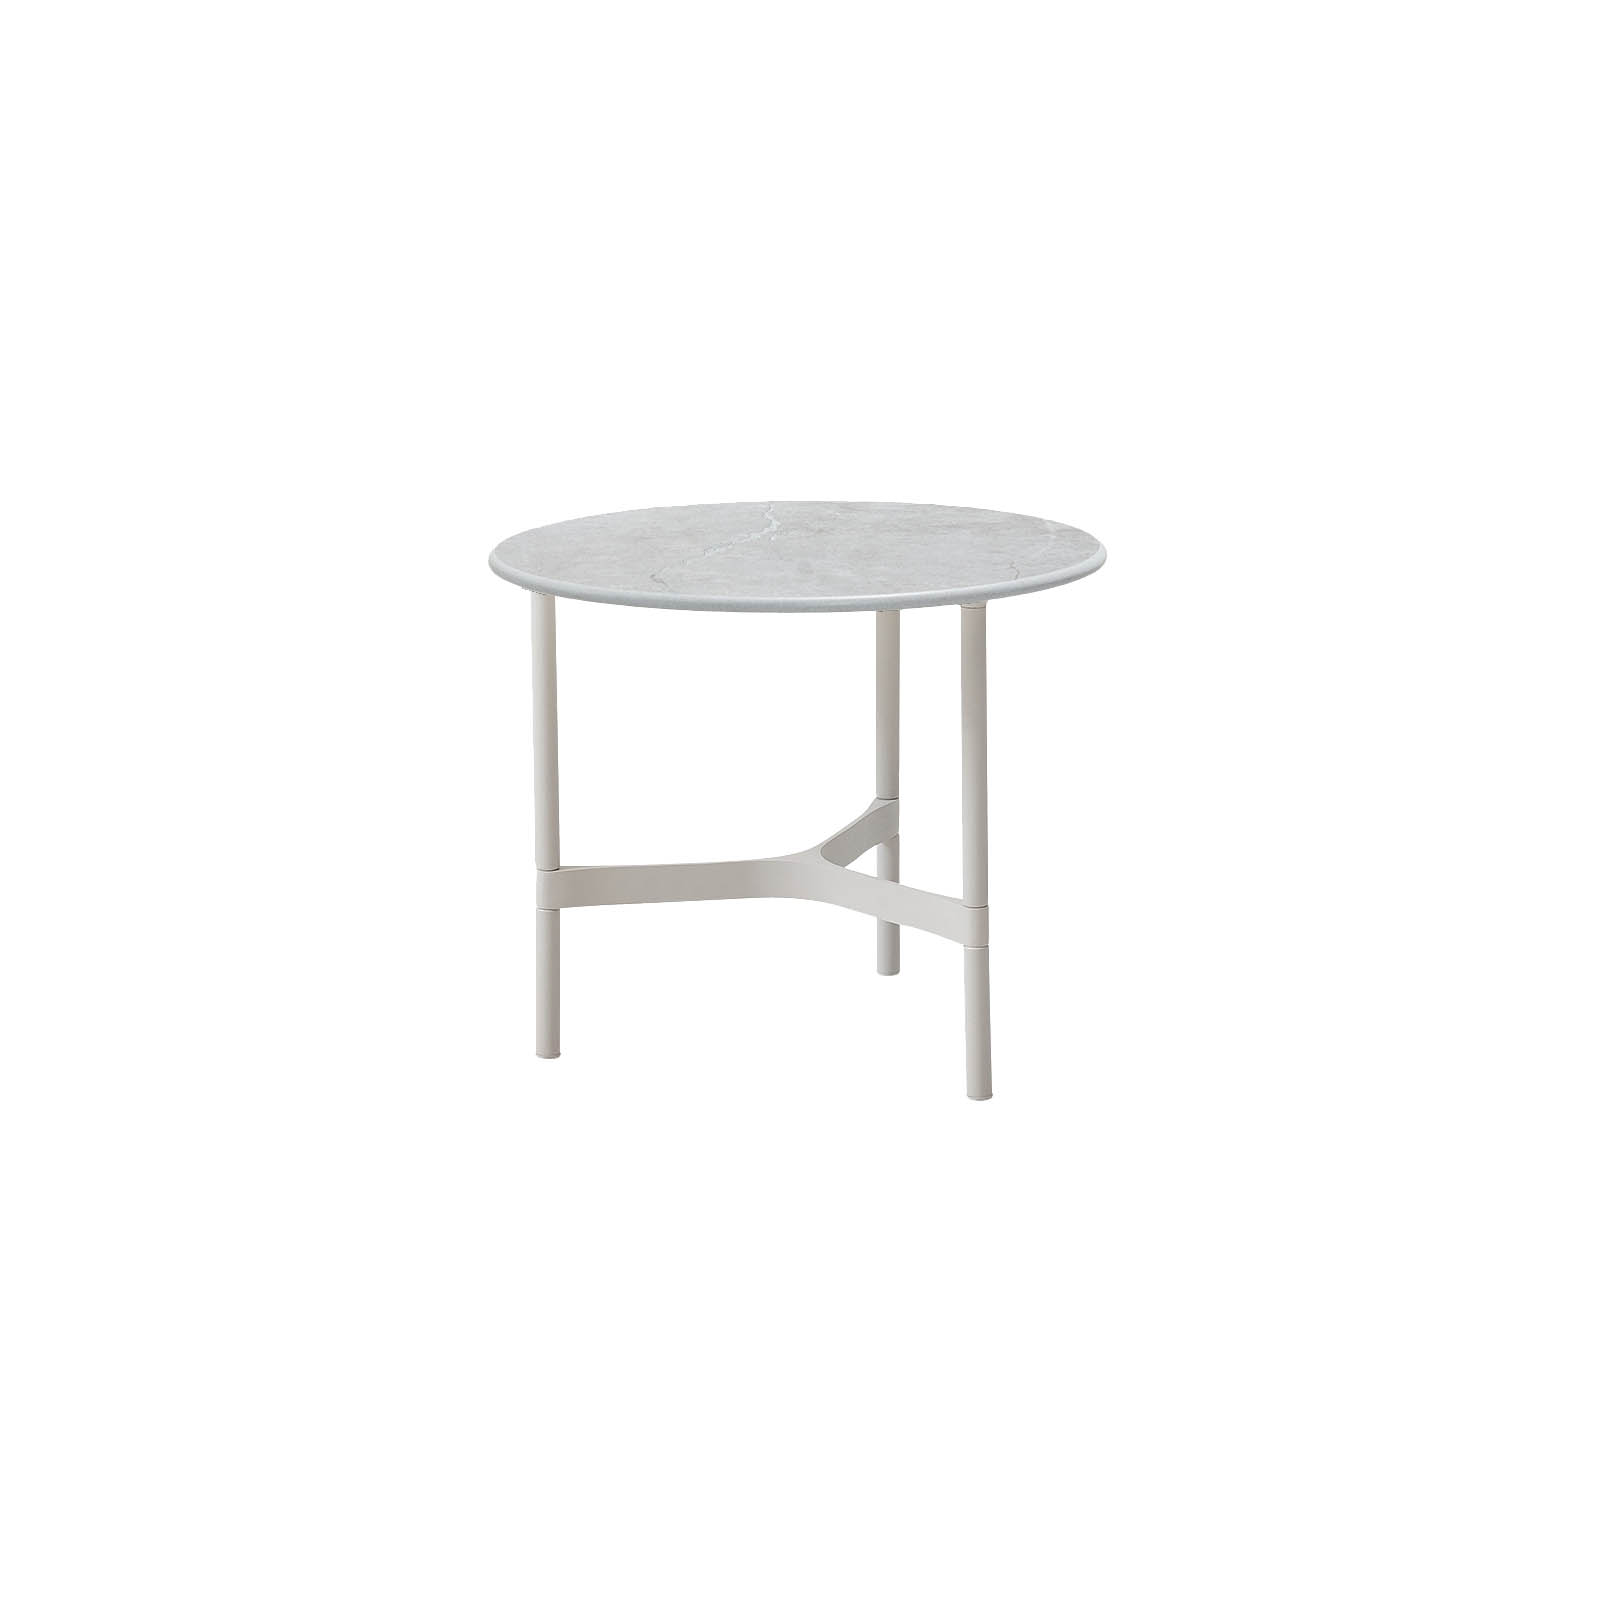 Twist Couchtisch klein aus Aluminium in White mit Tischplatte aus Ceramic in Fossil grey